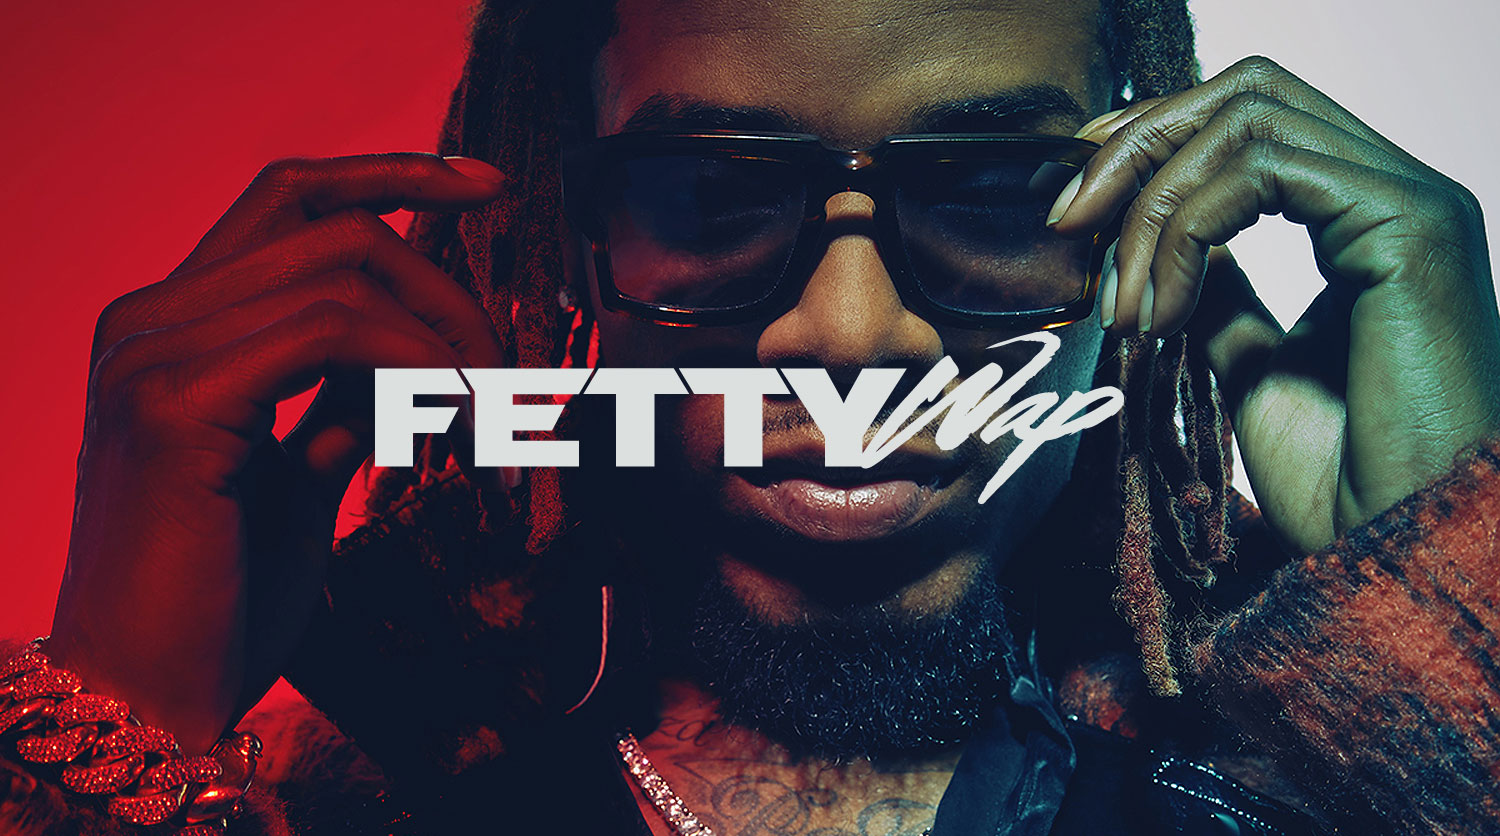 fetty-wap-bruce-wayne-mixtape - Fetty Wap